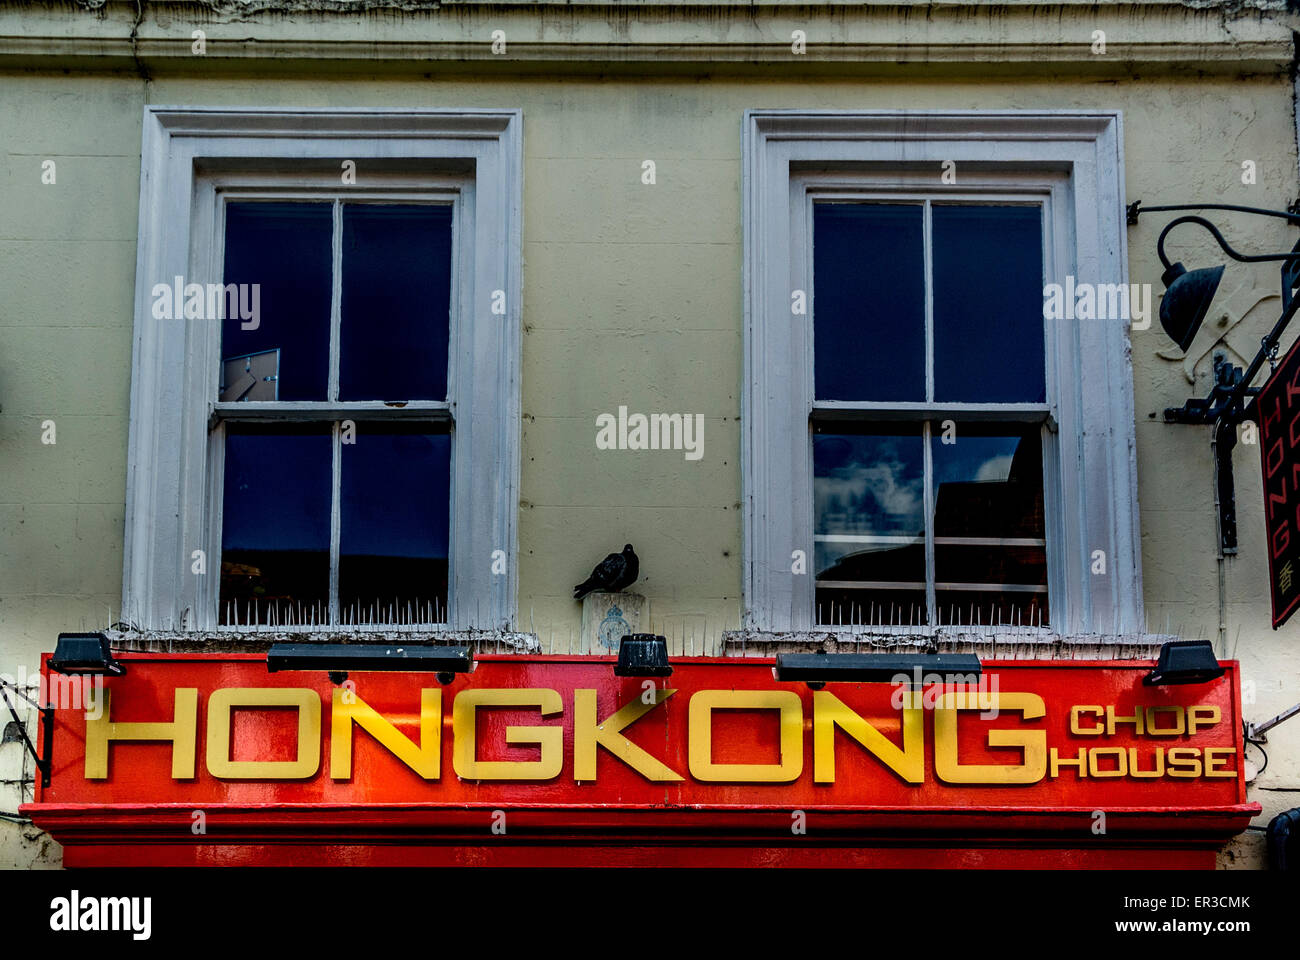 Hong Kong Chop House segno da asporto Foto Stock